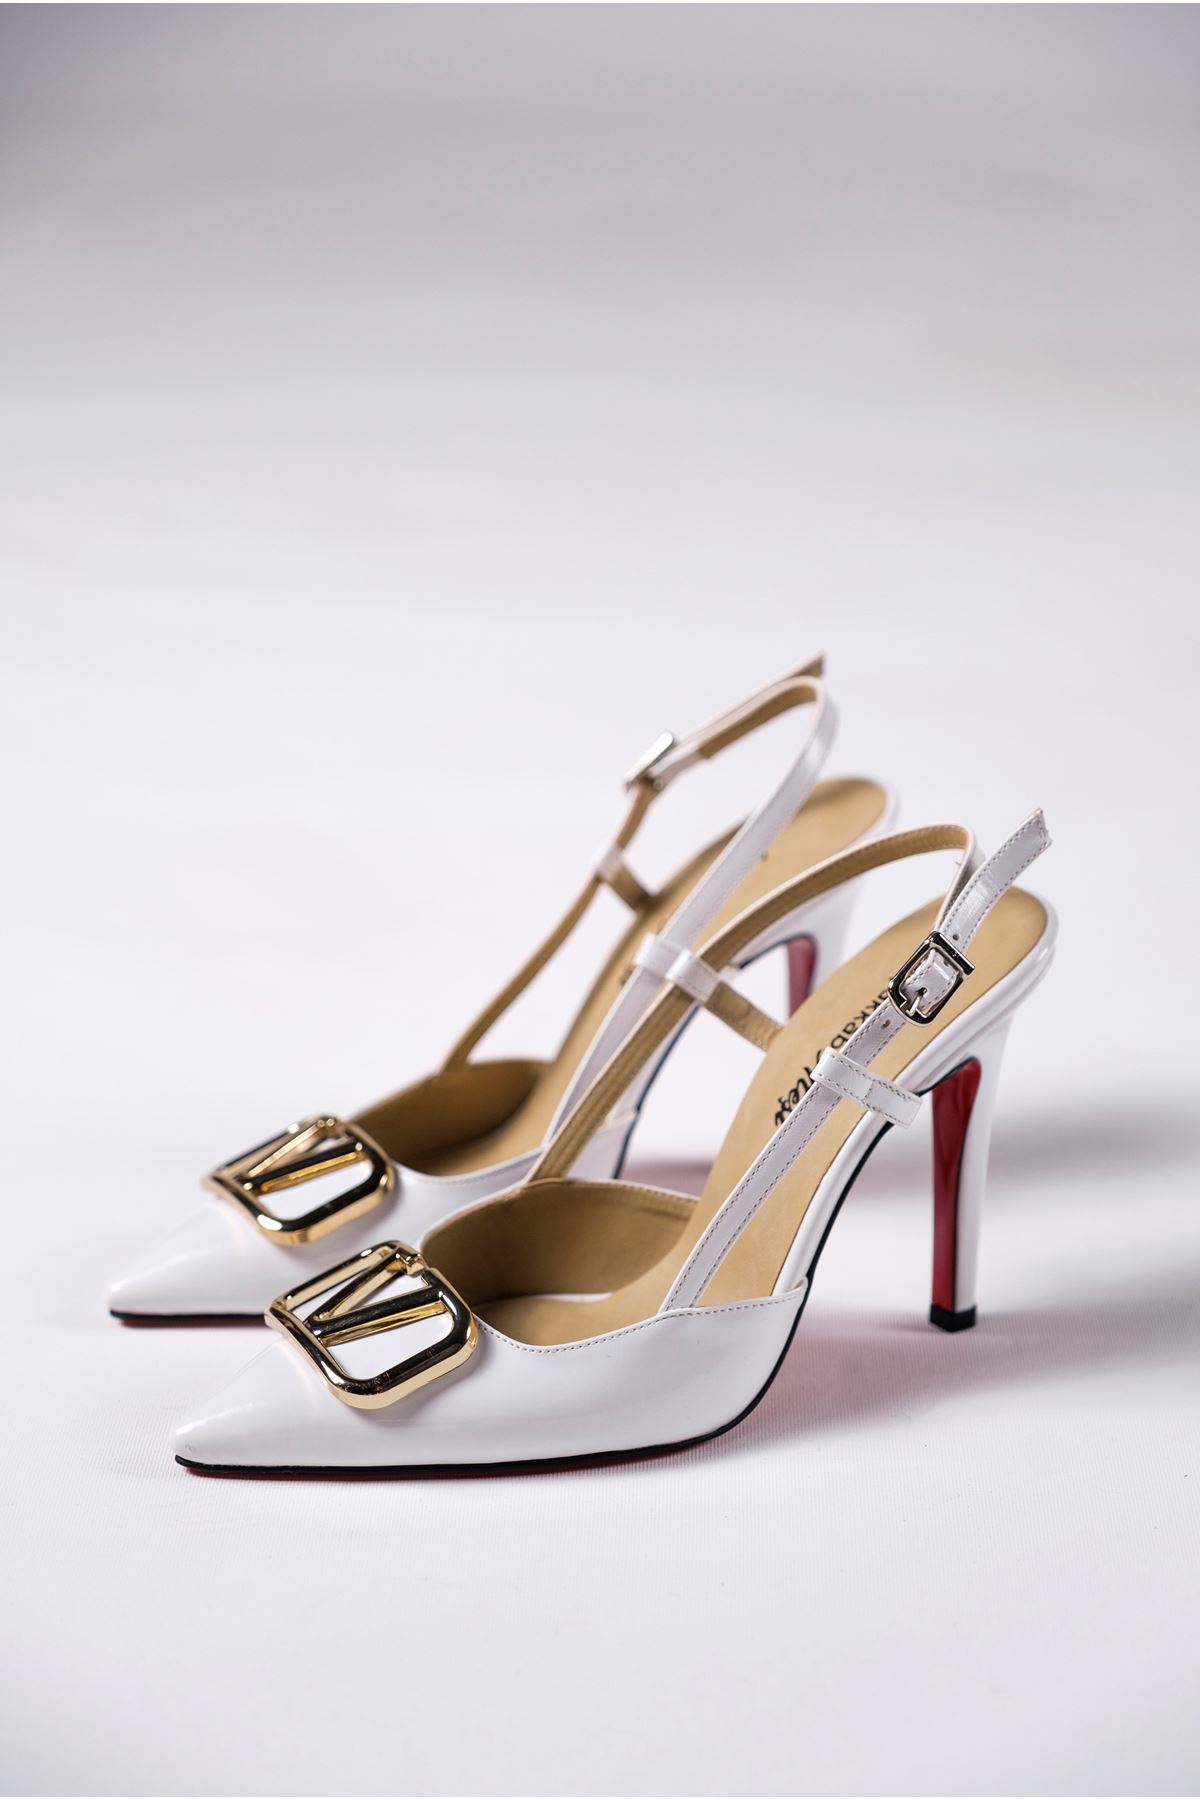 Beyaz Rugan Tokalı Kadın Topuklu Özel Tasarım Ayakkabı Stiletto Kajino